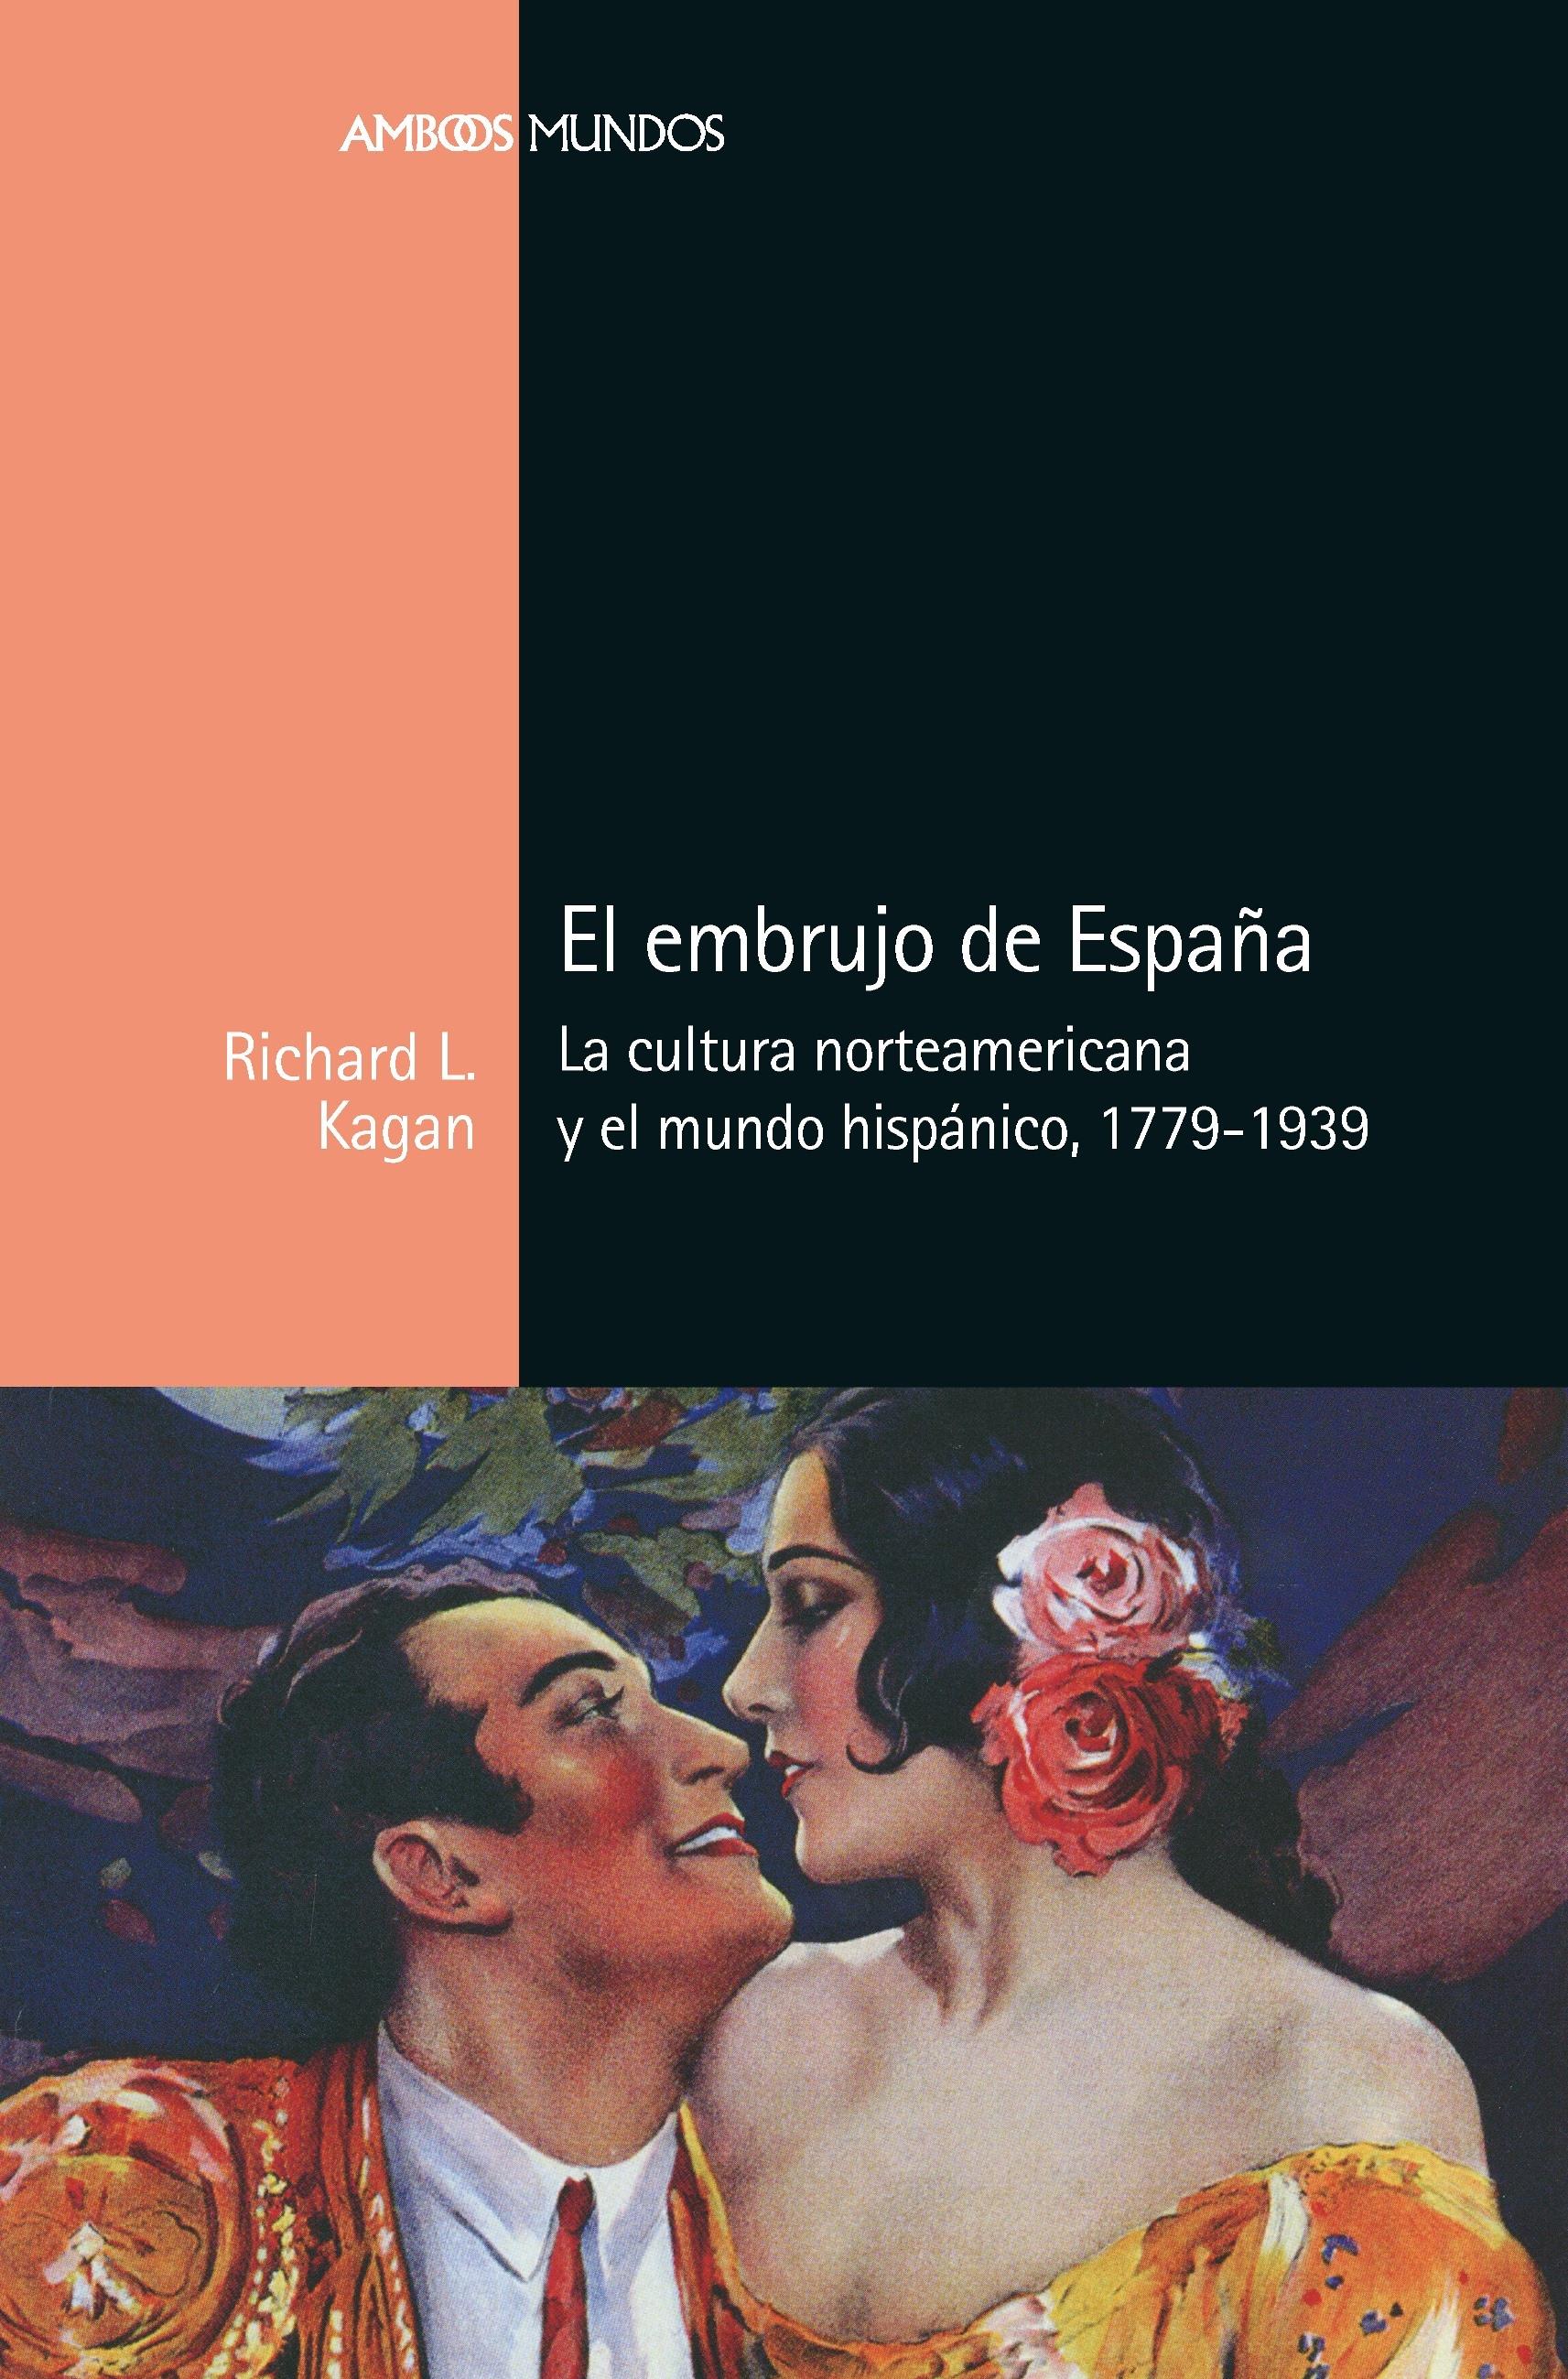 El embrujo de España "La cultura norteamericana y el mundo hispánico, 1779-1939". 